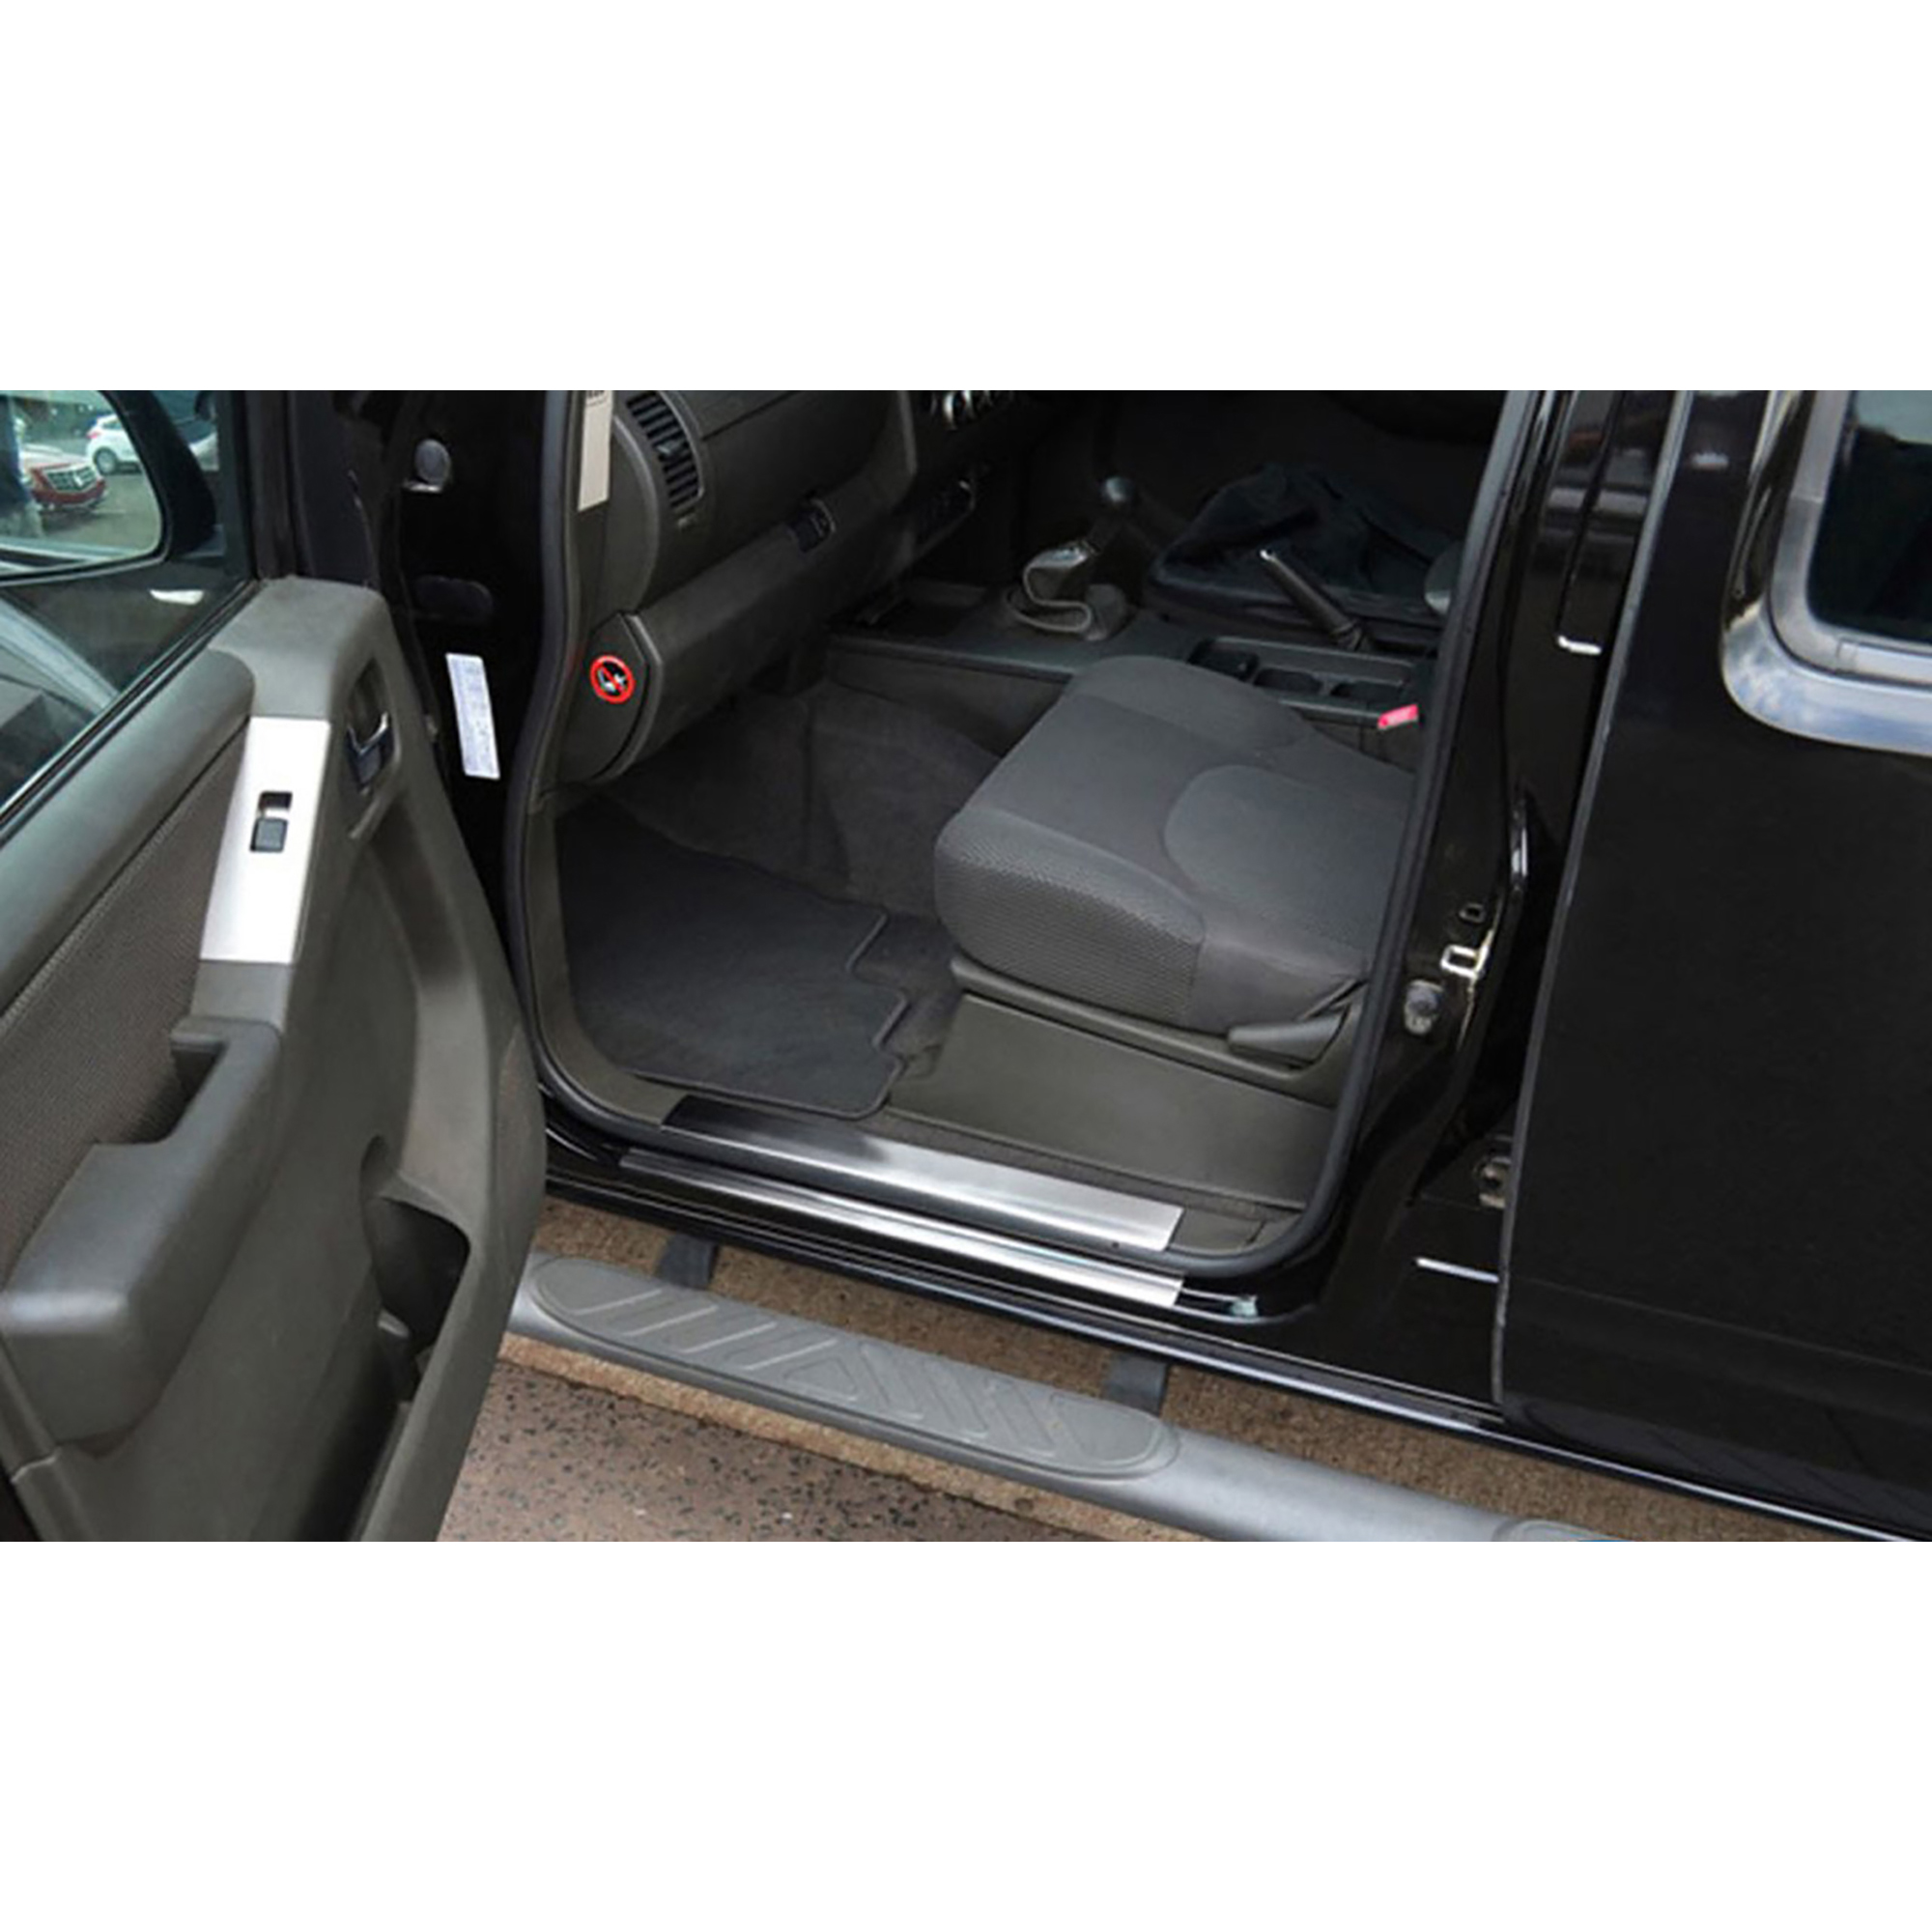 Nissan Navara (2006-2015) - Kapı Eşiği - (8 Parça P. Çelik) - (Pickup)